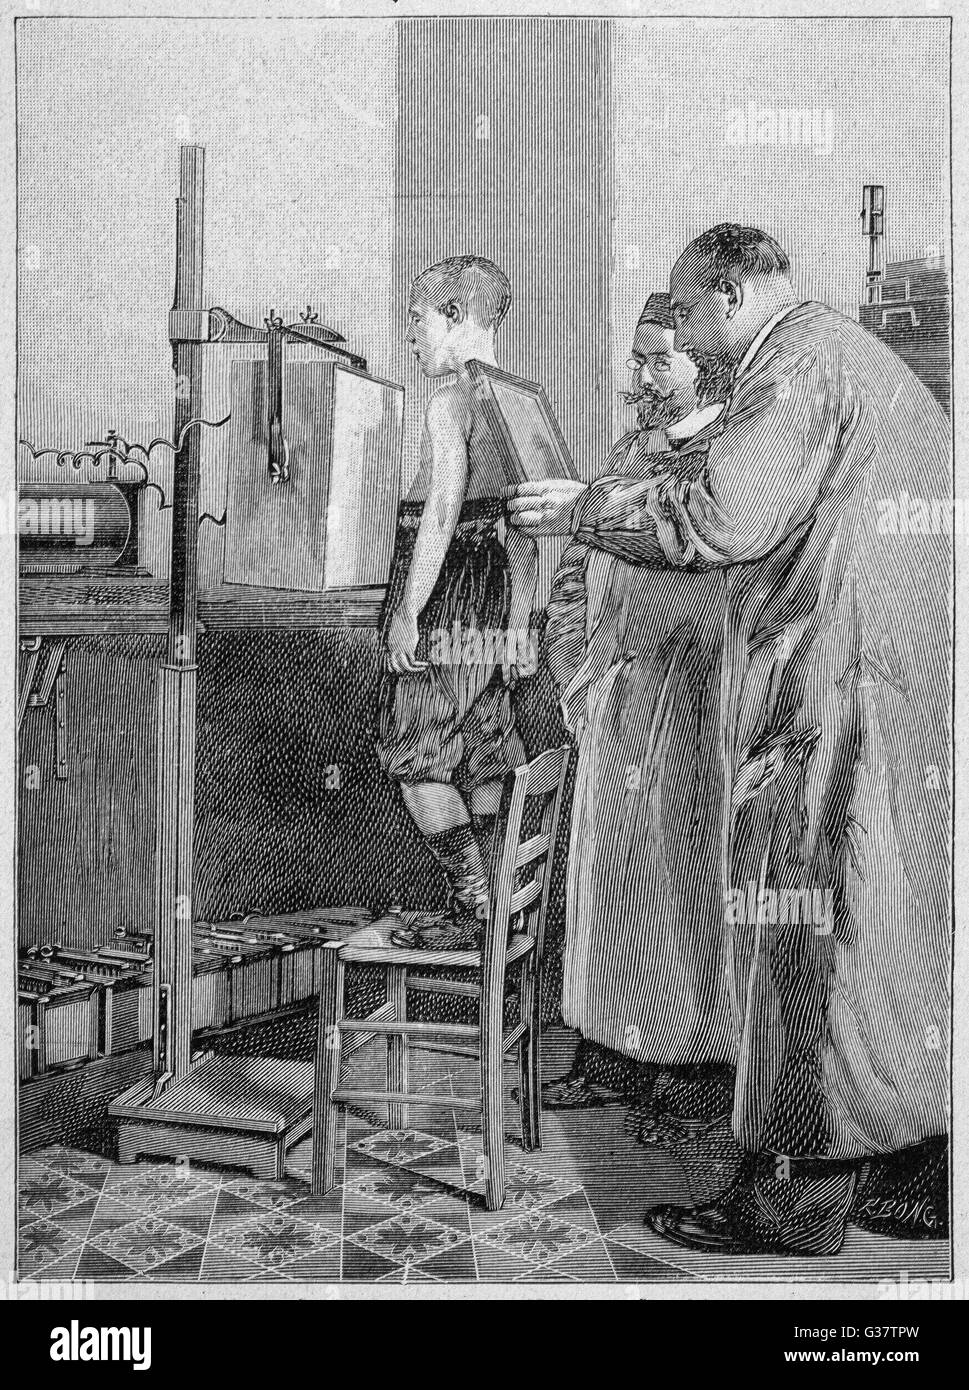 William Konrad Roentgen esamina un paziente. È stato insignito del Premio Nobel per la fisica 1901 per la sua scoperta nel 1895 di quello che sarebbe diventato noto come i raggi x. Data: 1896 Foto Stock